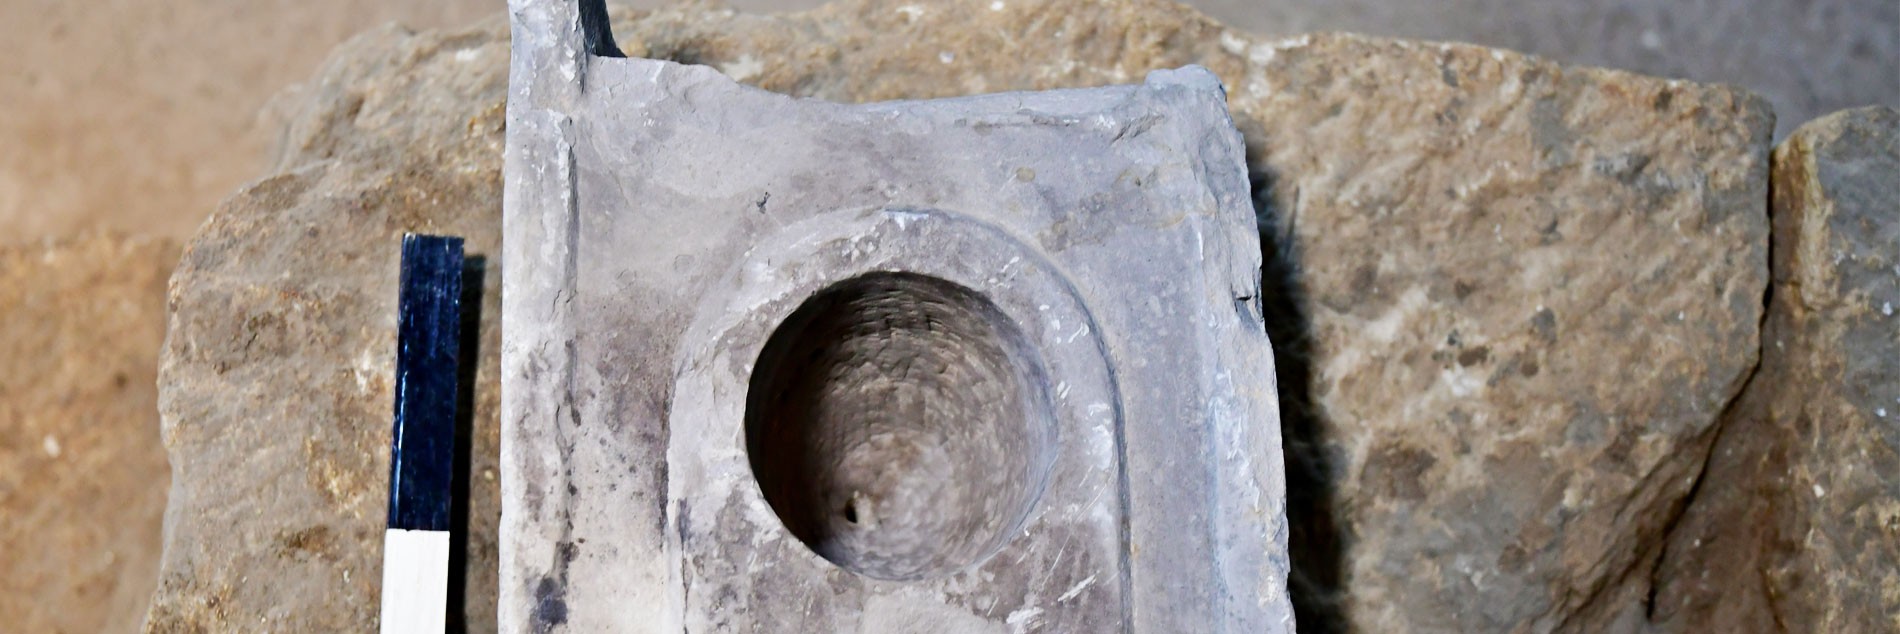 אתר מורשת לאומית עיר דוד: נחשף חפץ נדיר ששימש למדידה אחידה של נפח